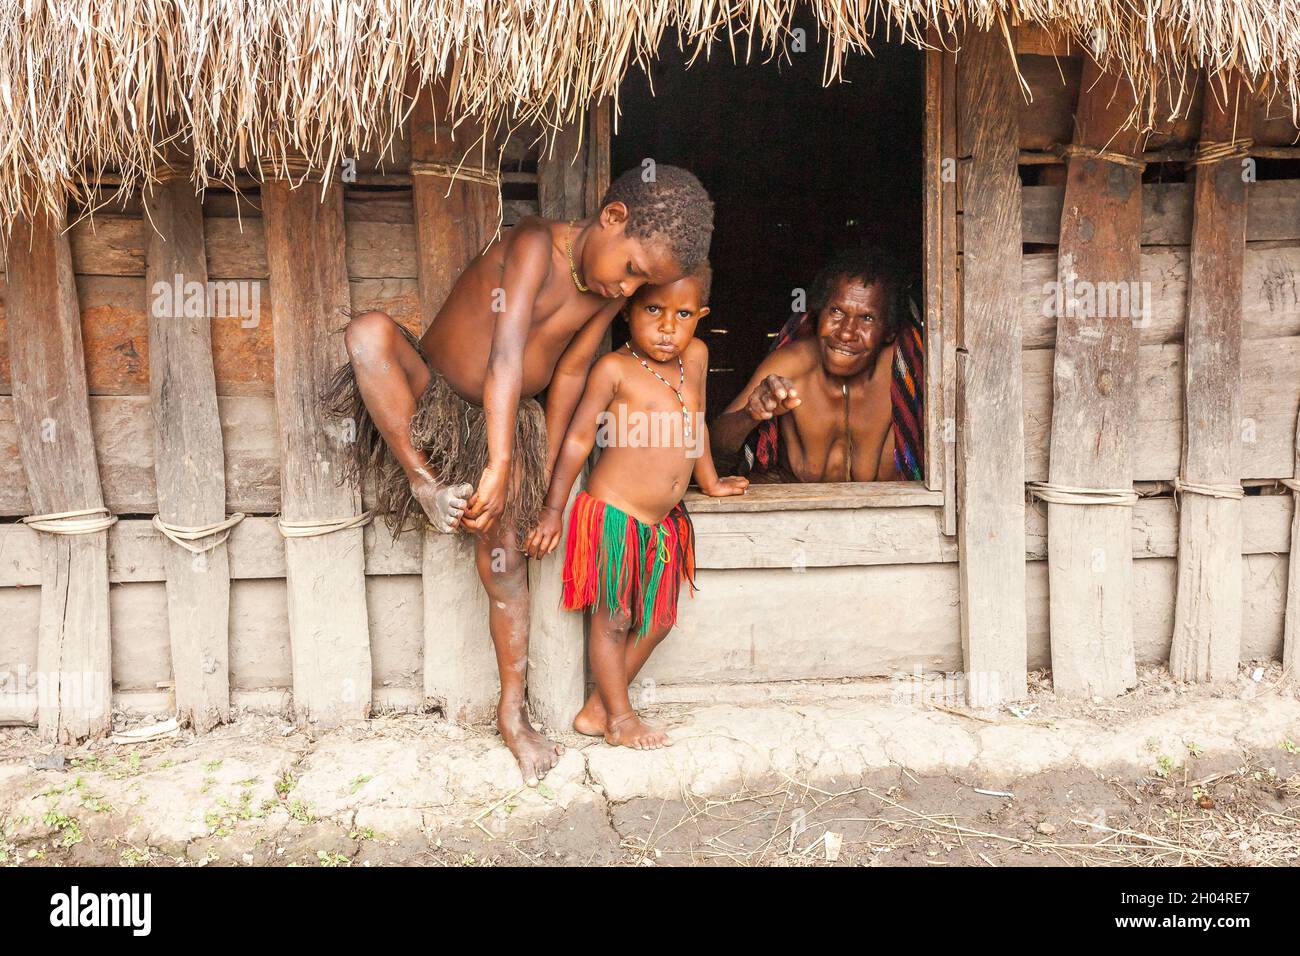 Wamena, Indonesien - 9. Januar 2010: Kinder des Dani-Stammes stehen in der Nähe von Strohhäusern, Papua-Neuguinea. Stockfoto